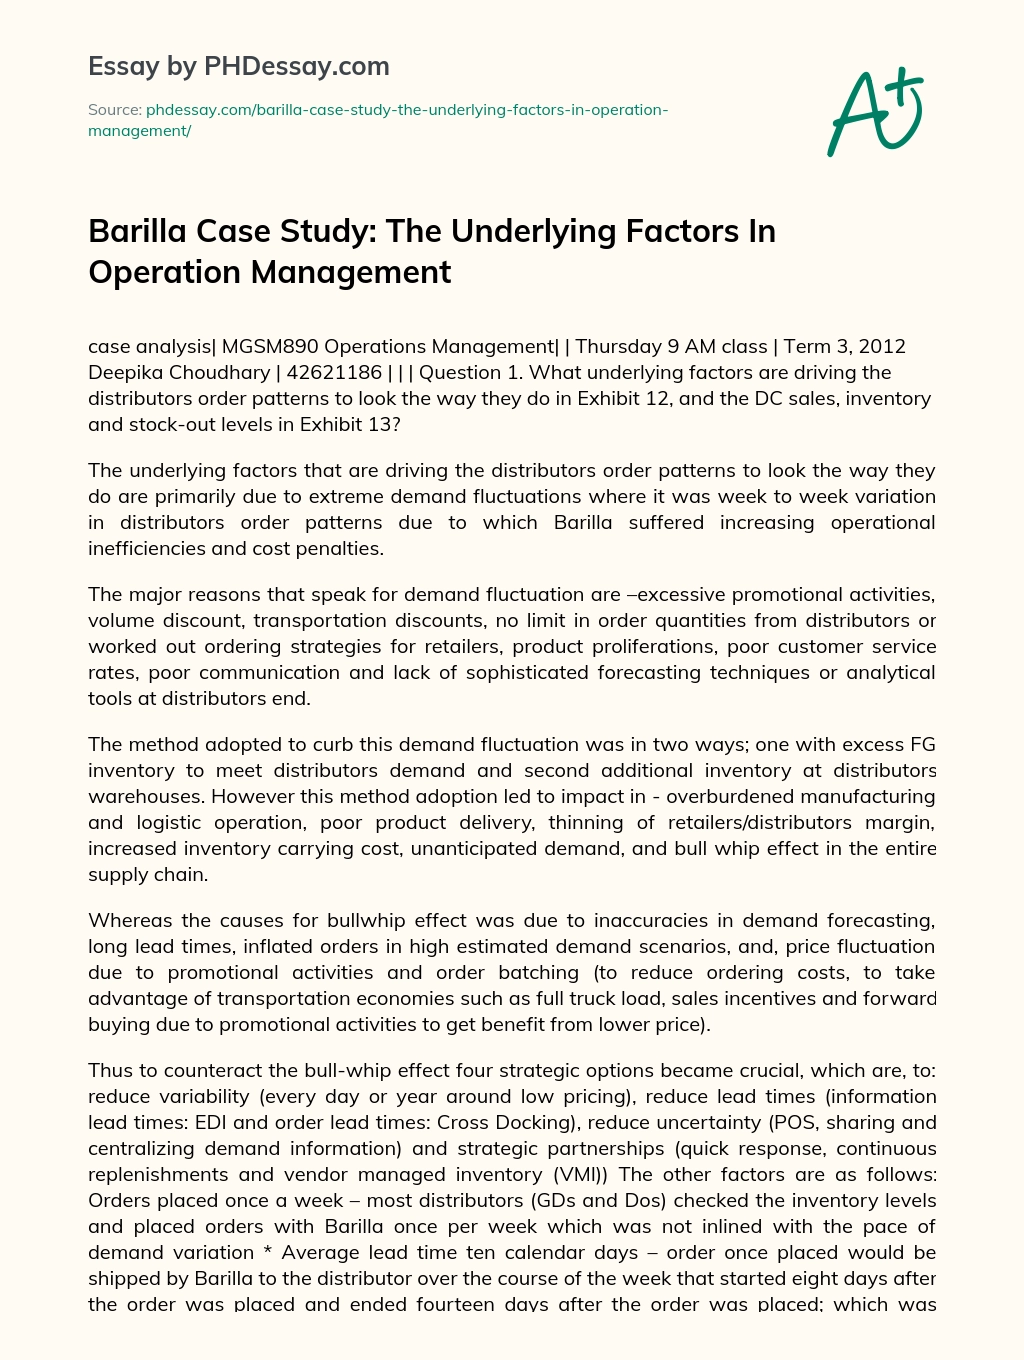 Barilla Case Study essay